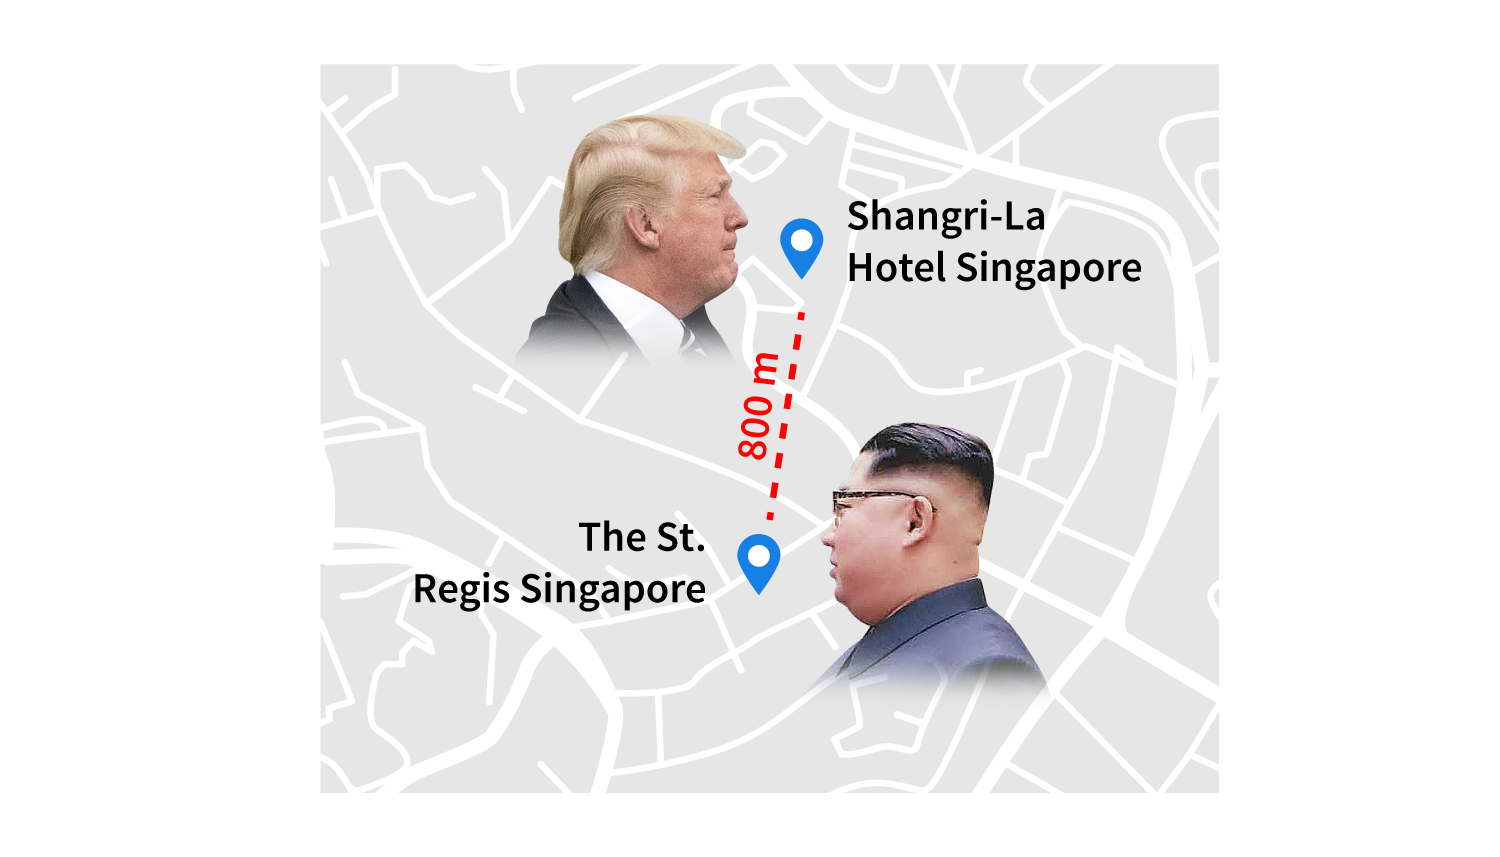 Singapur'da bir araya gelecek iki liderin kaldıkları otel arasında sadece 800 metre mesafe var.